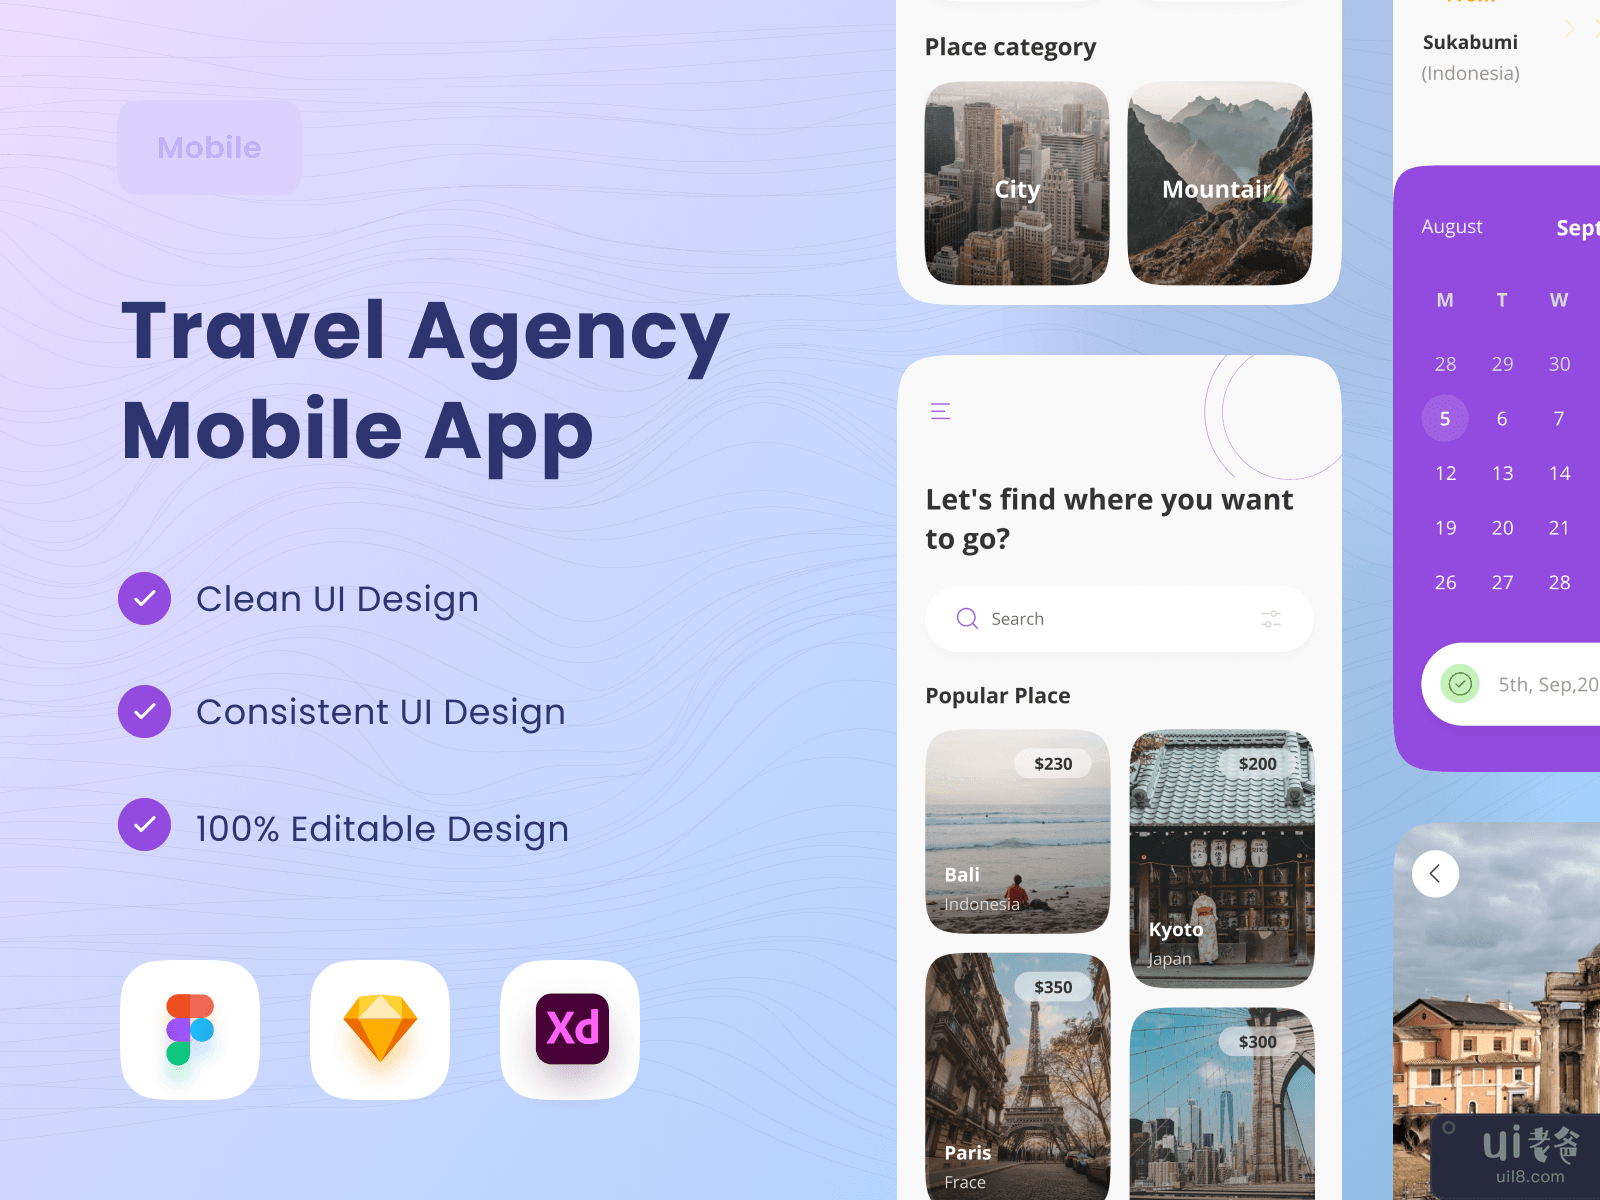 Travel Agency Mobile App